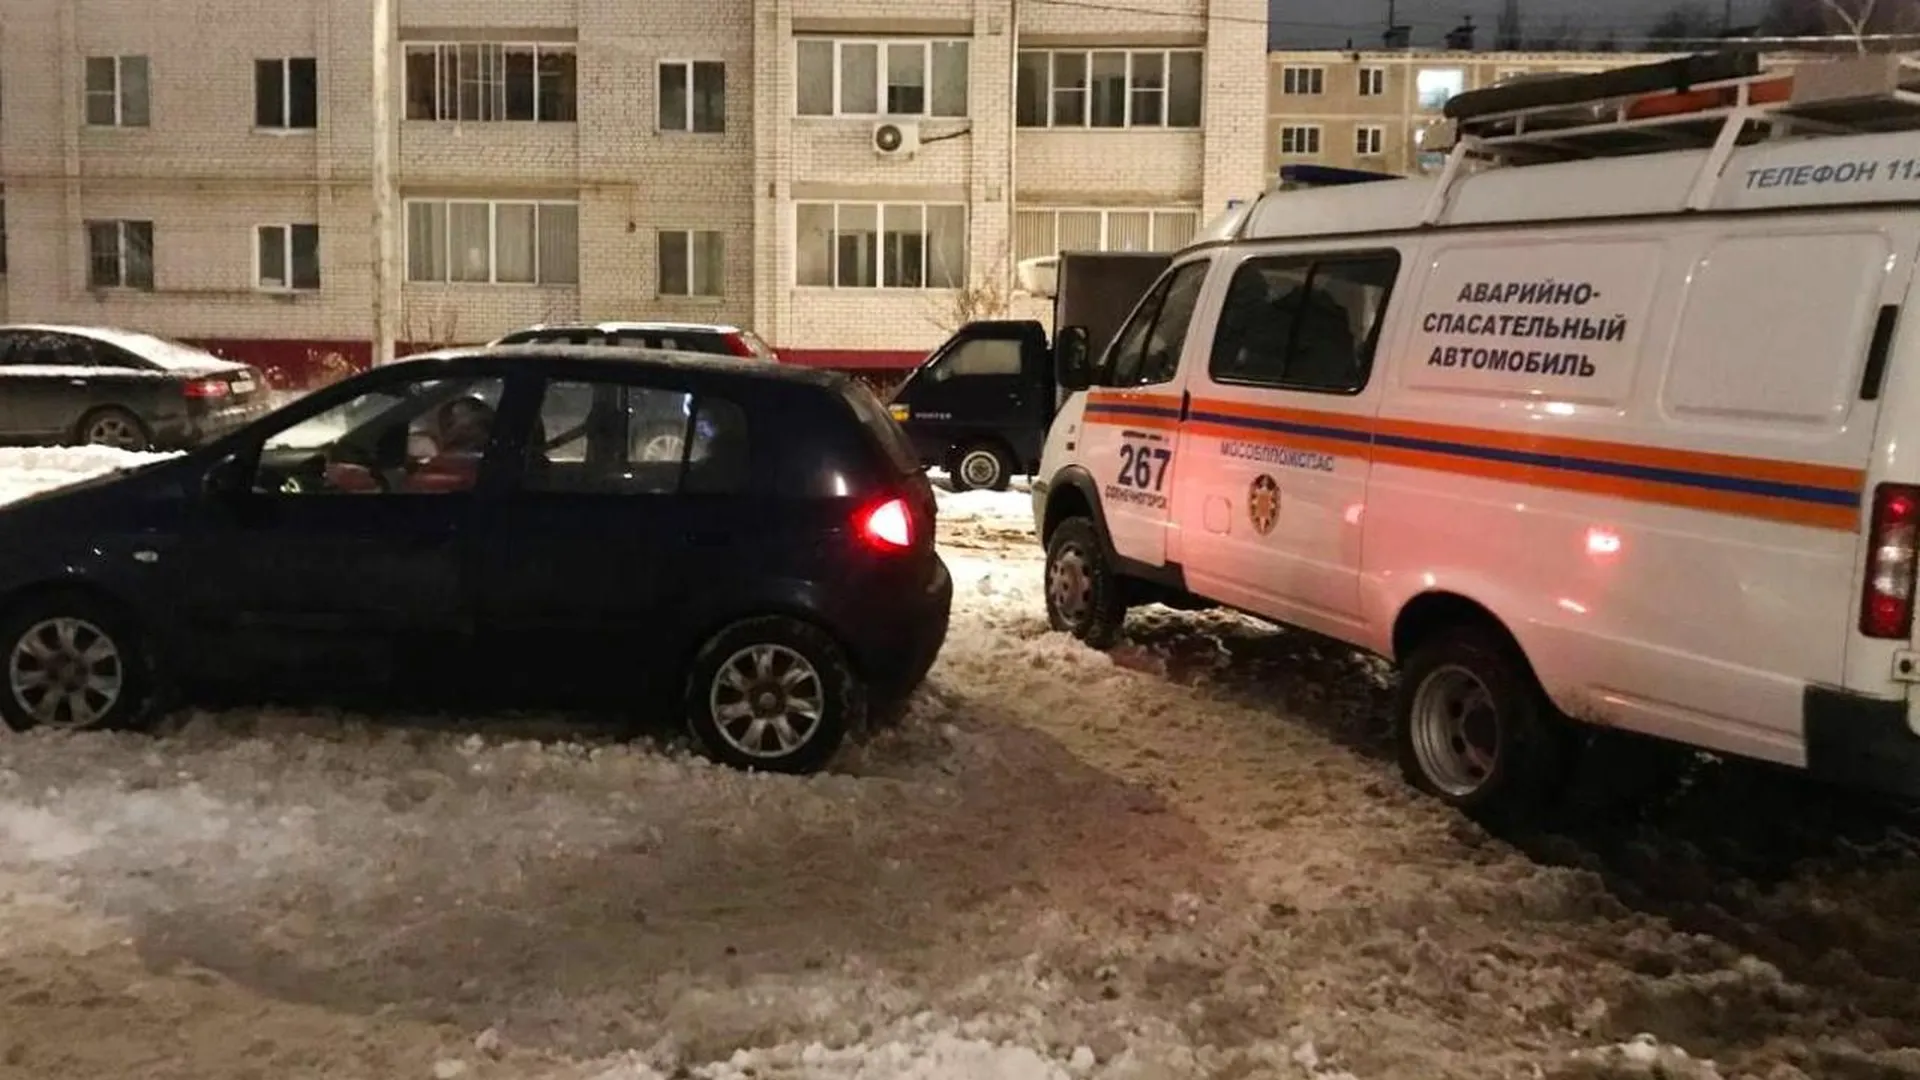 Спасатели освободили маленького ребенка из запертого автомобиля в Солнечногорске